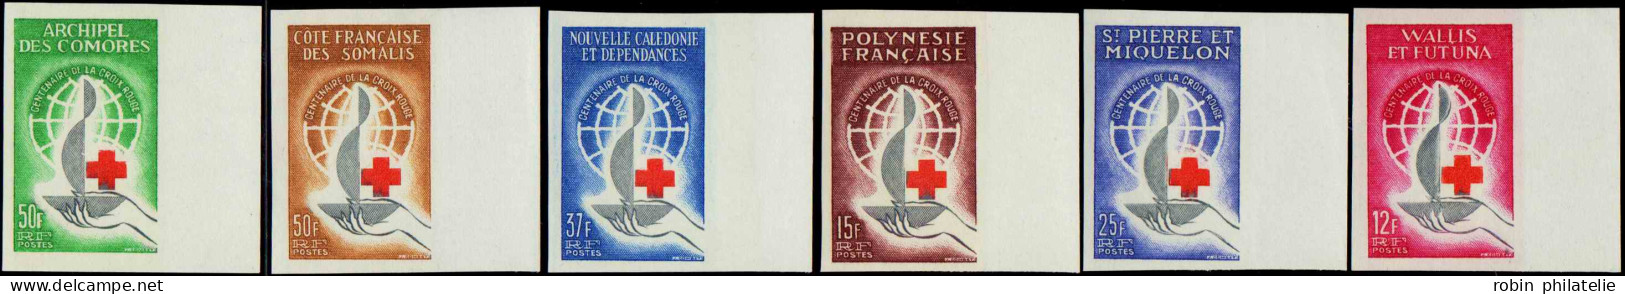 Séries Coloniales  N°1963 Croix-rouge 1963 6 Valeurs Non Dentelées  Qualité:** - Unclassified